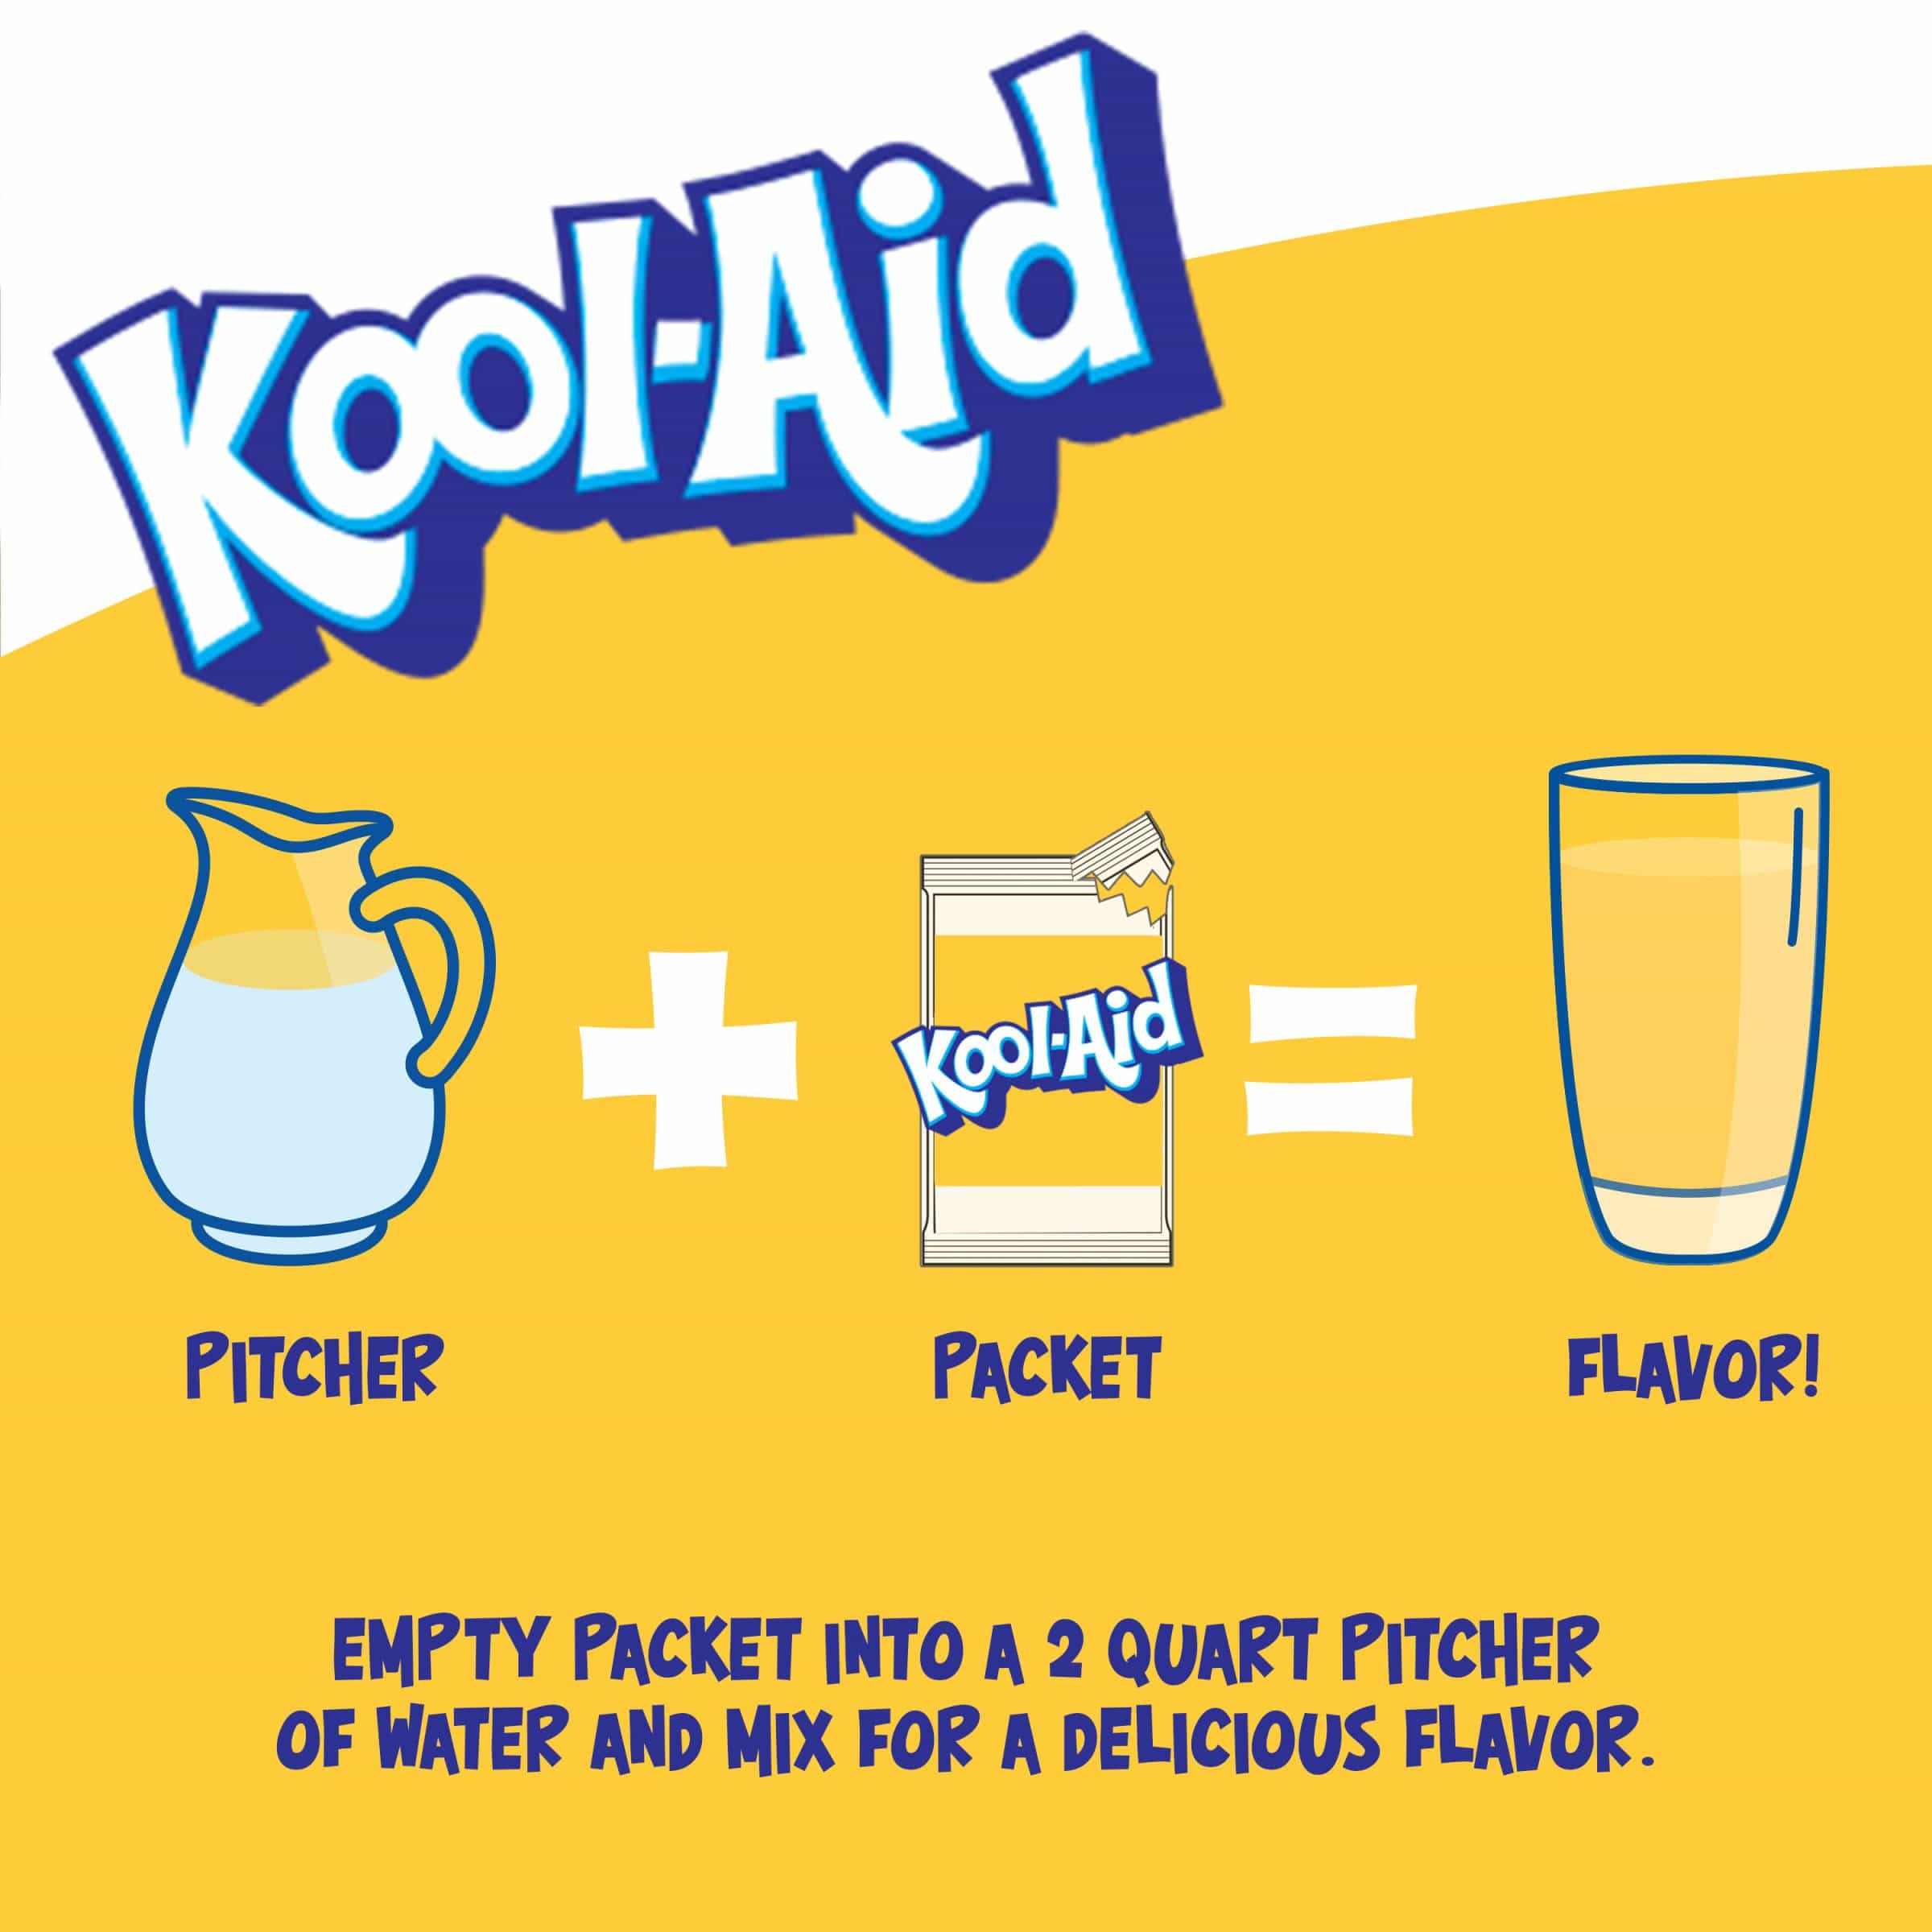 Une affiche blanc au-dessus et jaune en-dessous avec une carafe blanche, un paquet de KoolAid et un verre rempli de boisson jaune